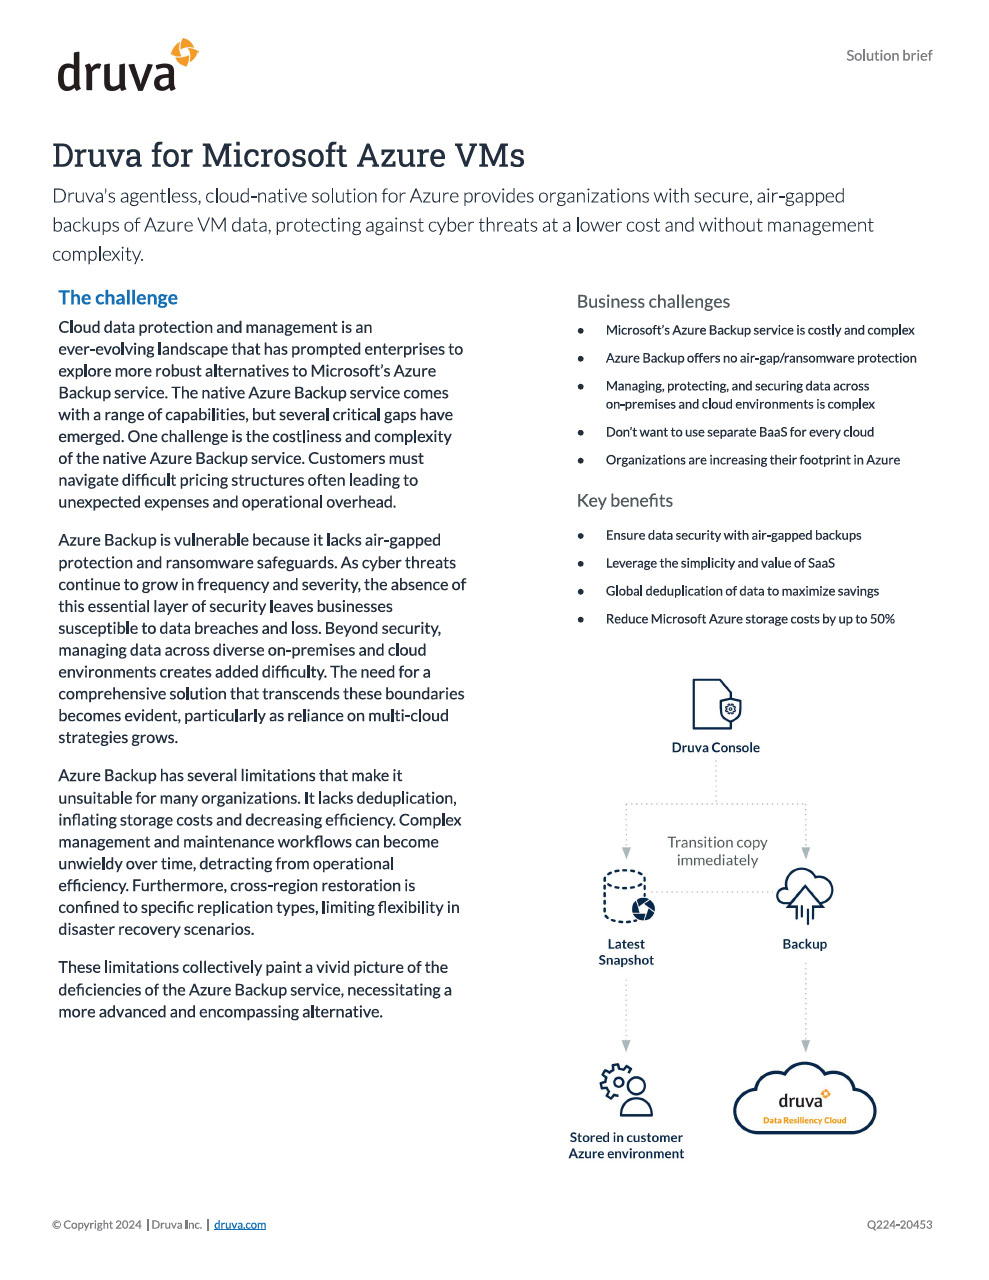 Druva for Microsoft Azure VMs